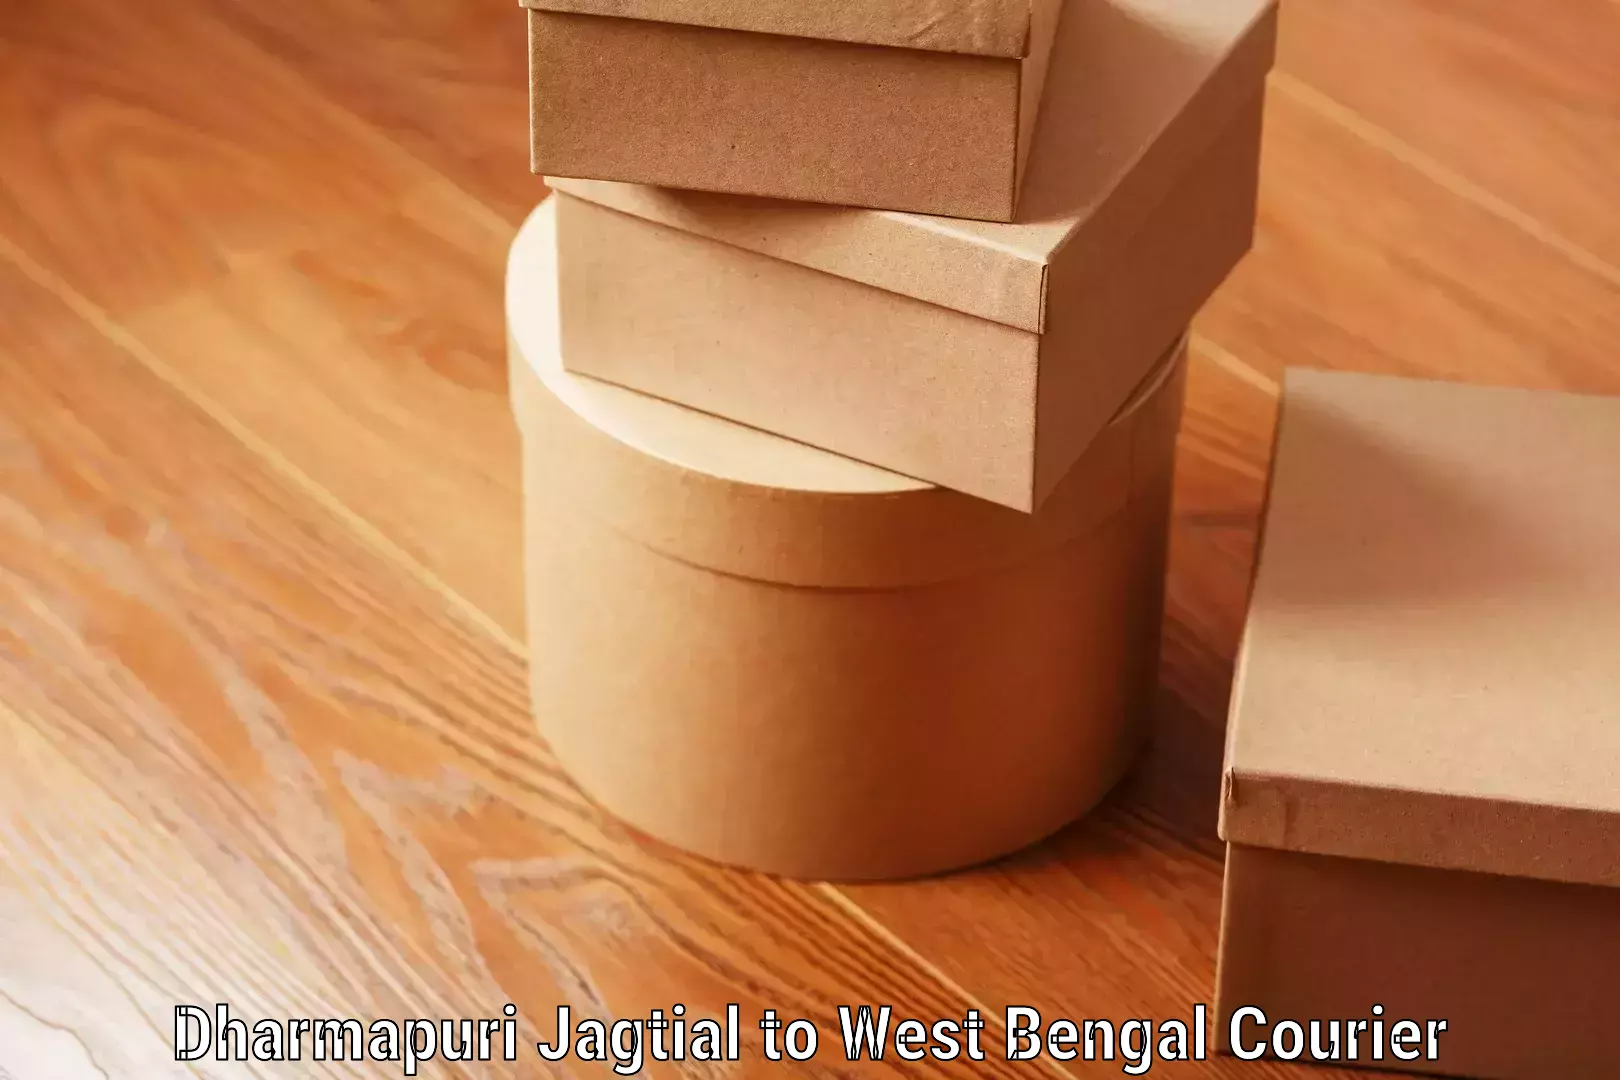 Luggage delivery network Dharmapuri Jagtial to Belda